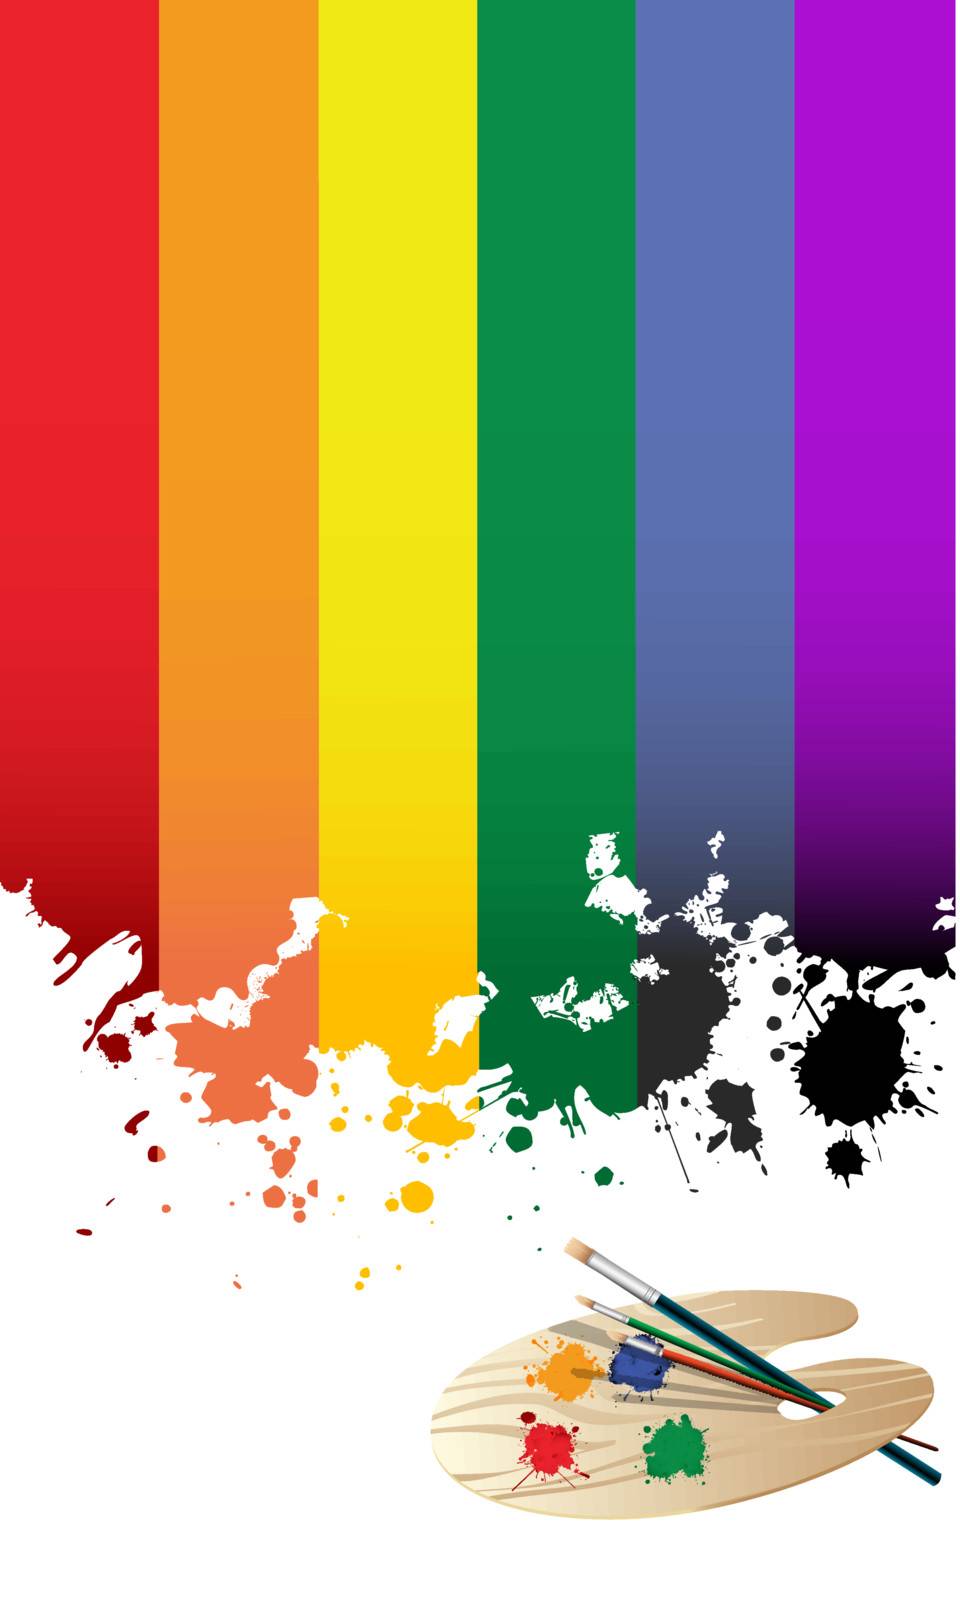 Rainbow flag by Lirch